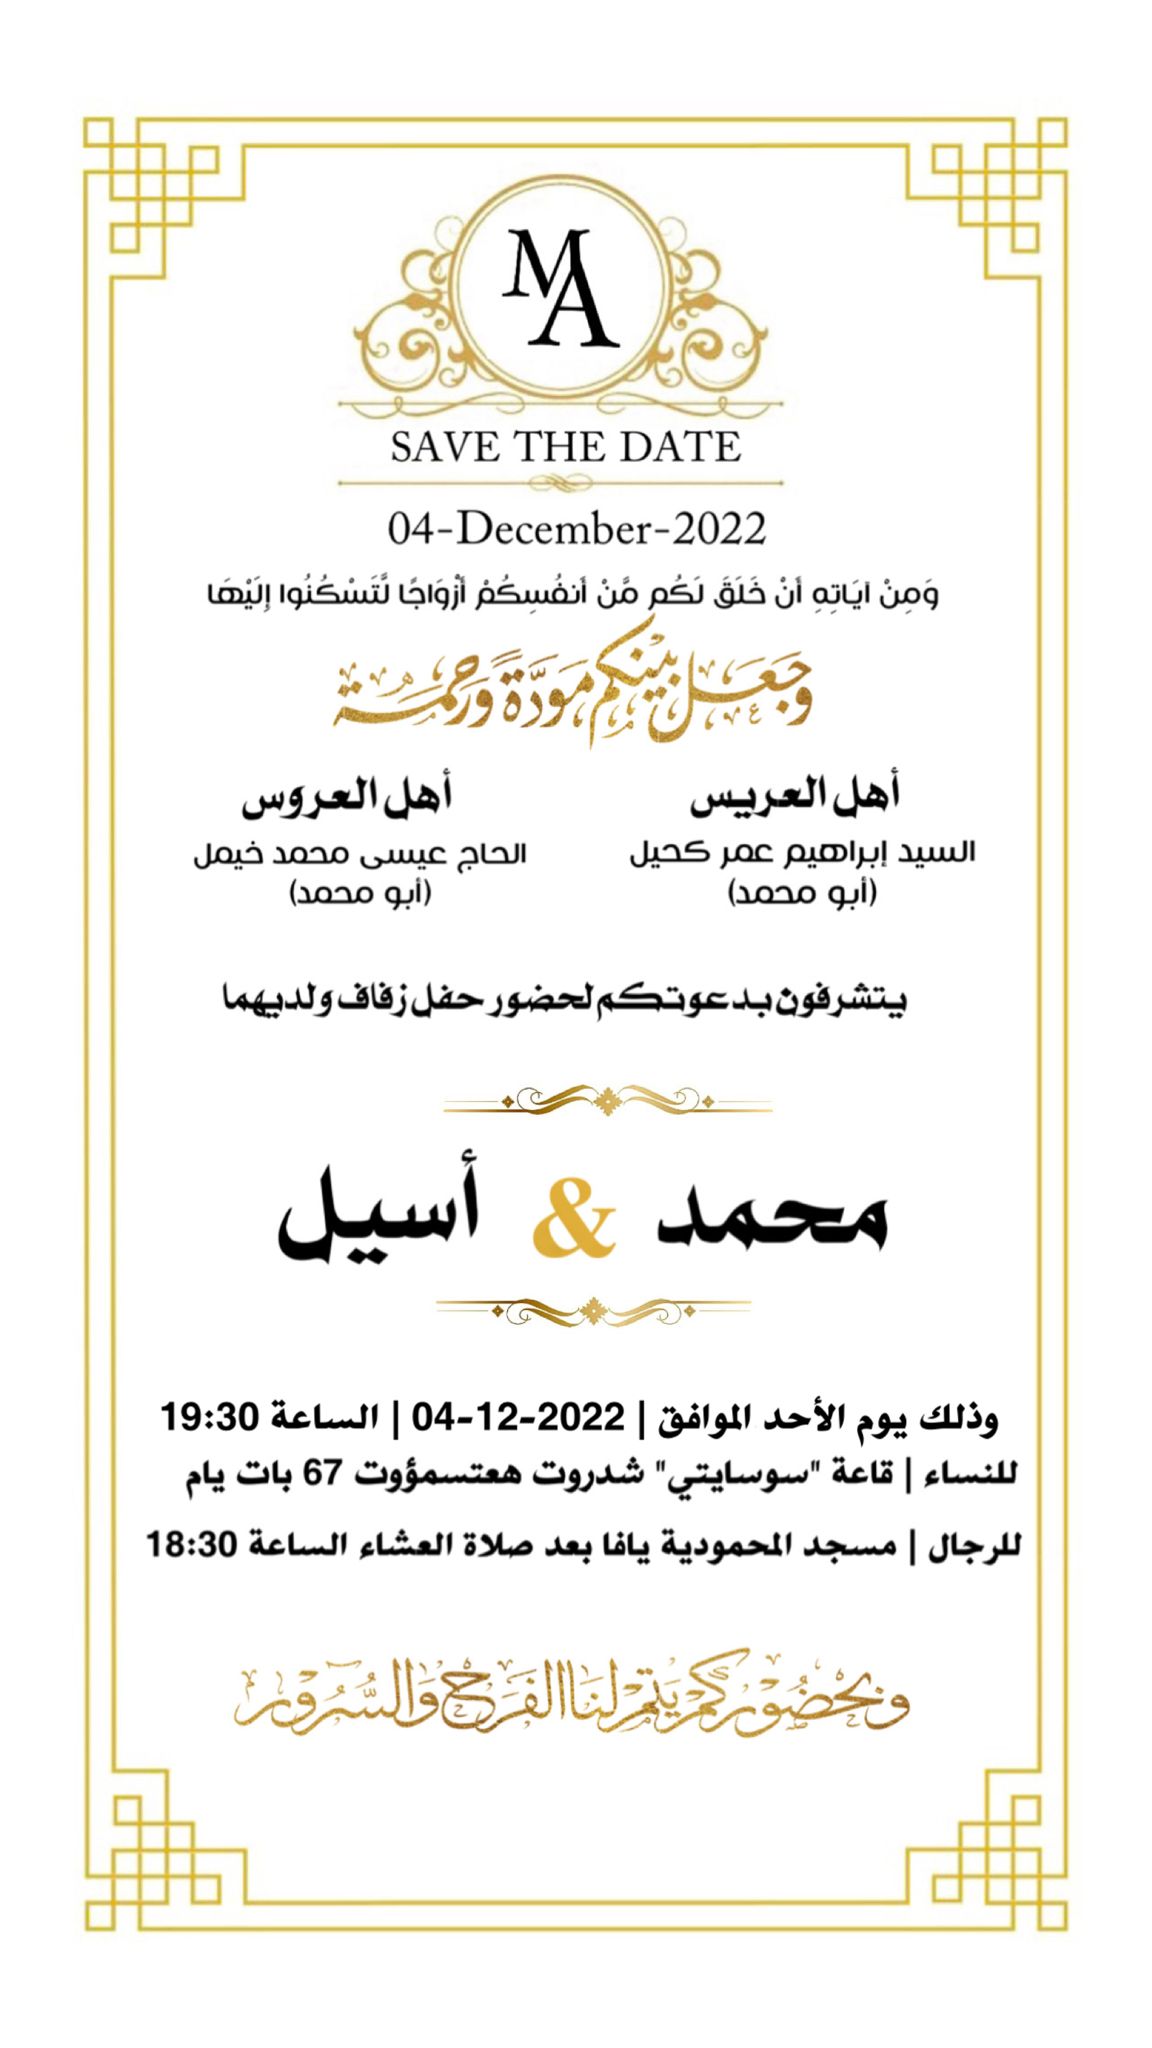 الدعوة للرجال - الأحد: حفل زفاف الشاب محمد كحيل في مسجد المحمودية